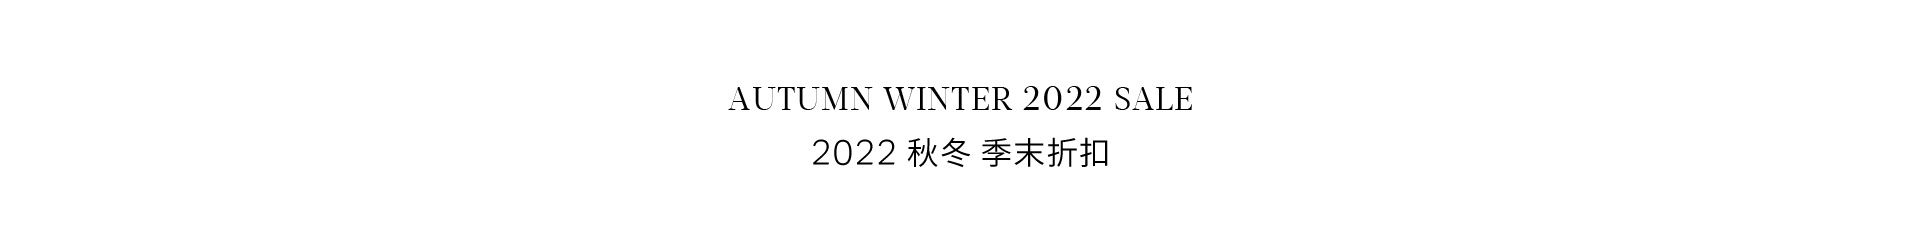 2022 秋冬 季末折扣 